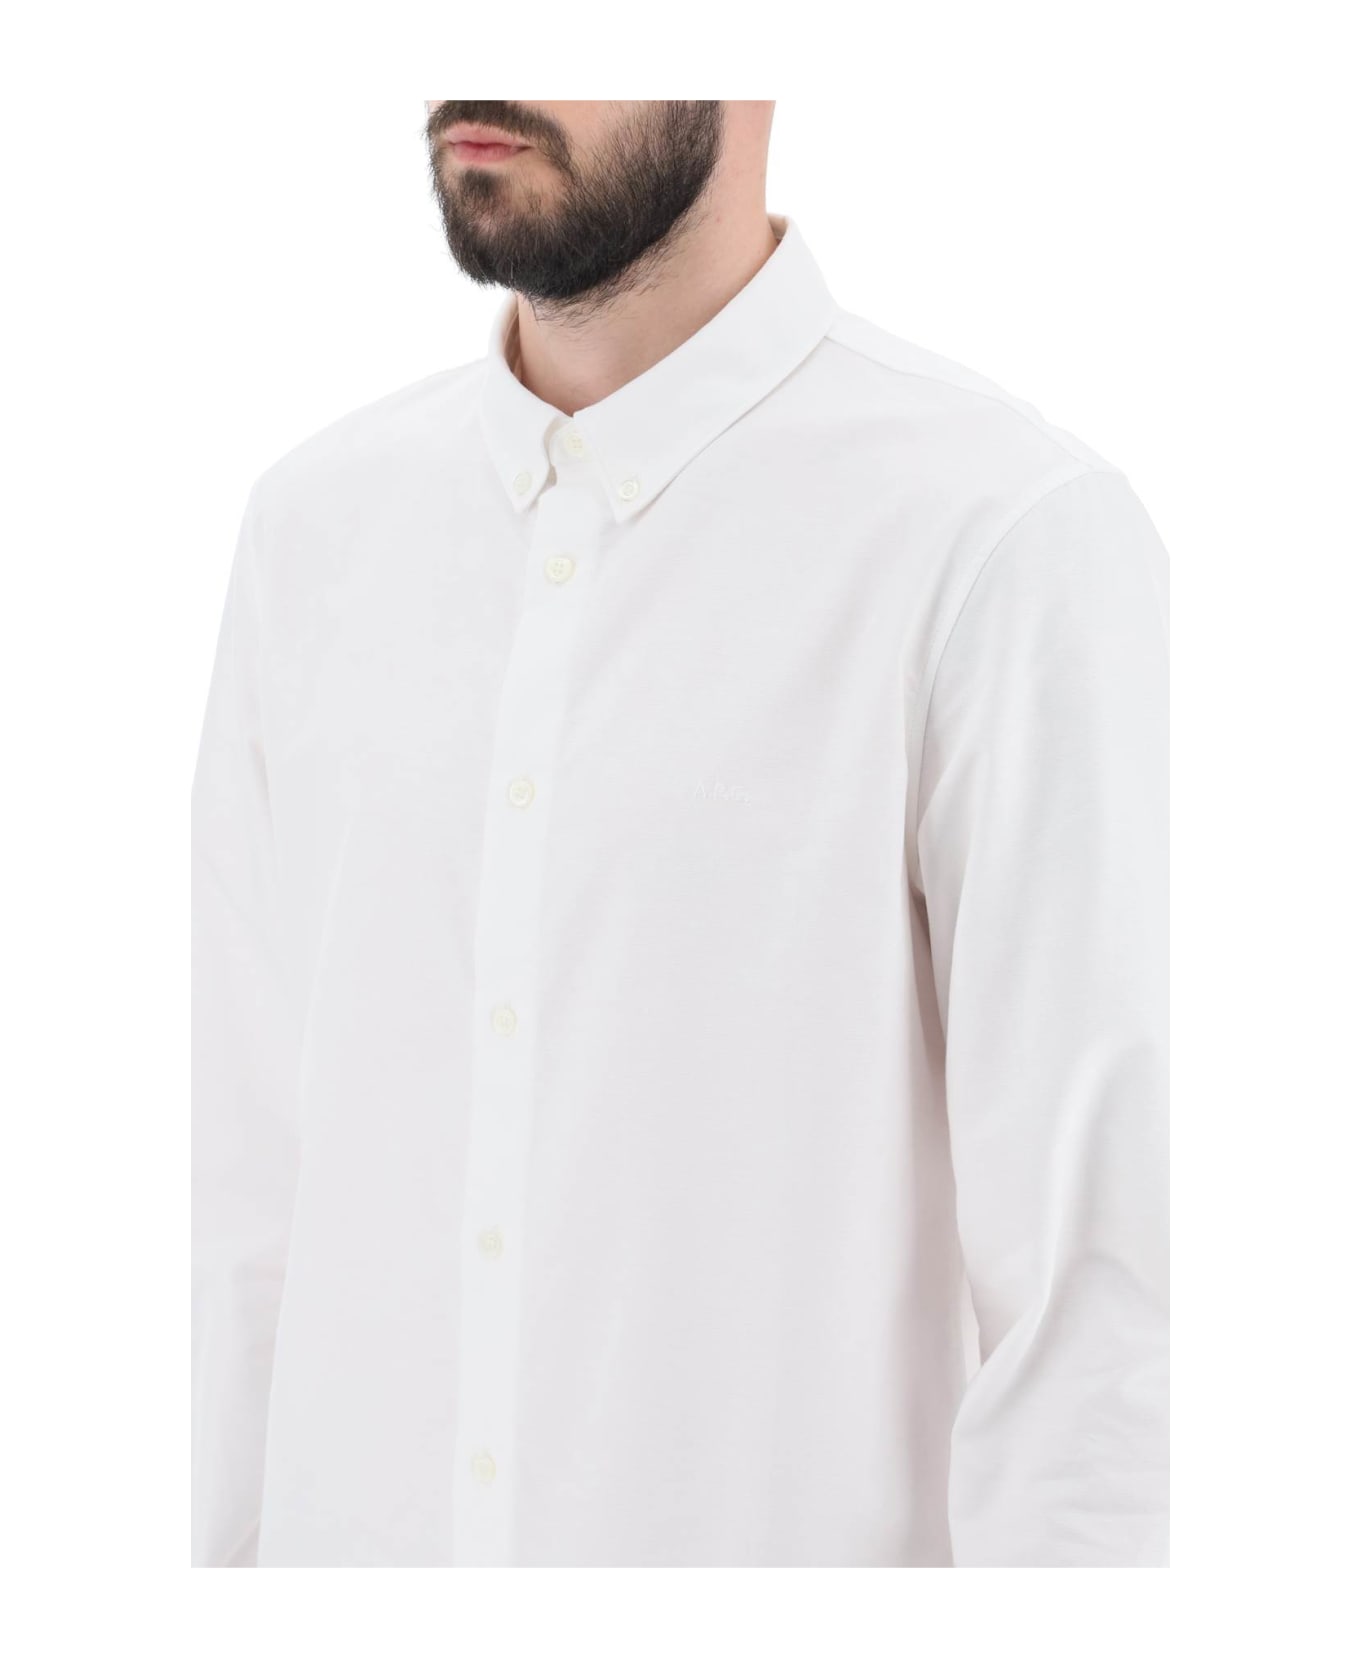 A.P.C. Greg Cotton Shirt - BLANC (White) シャツ